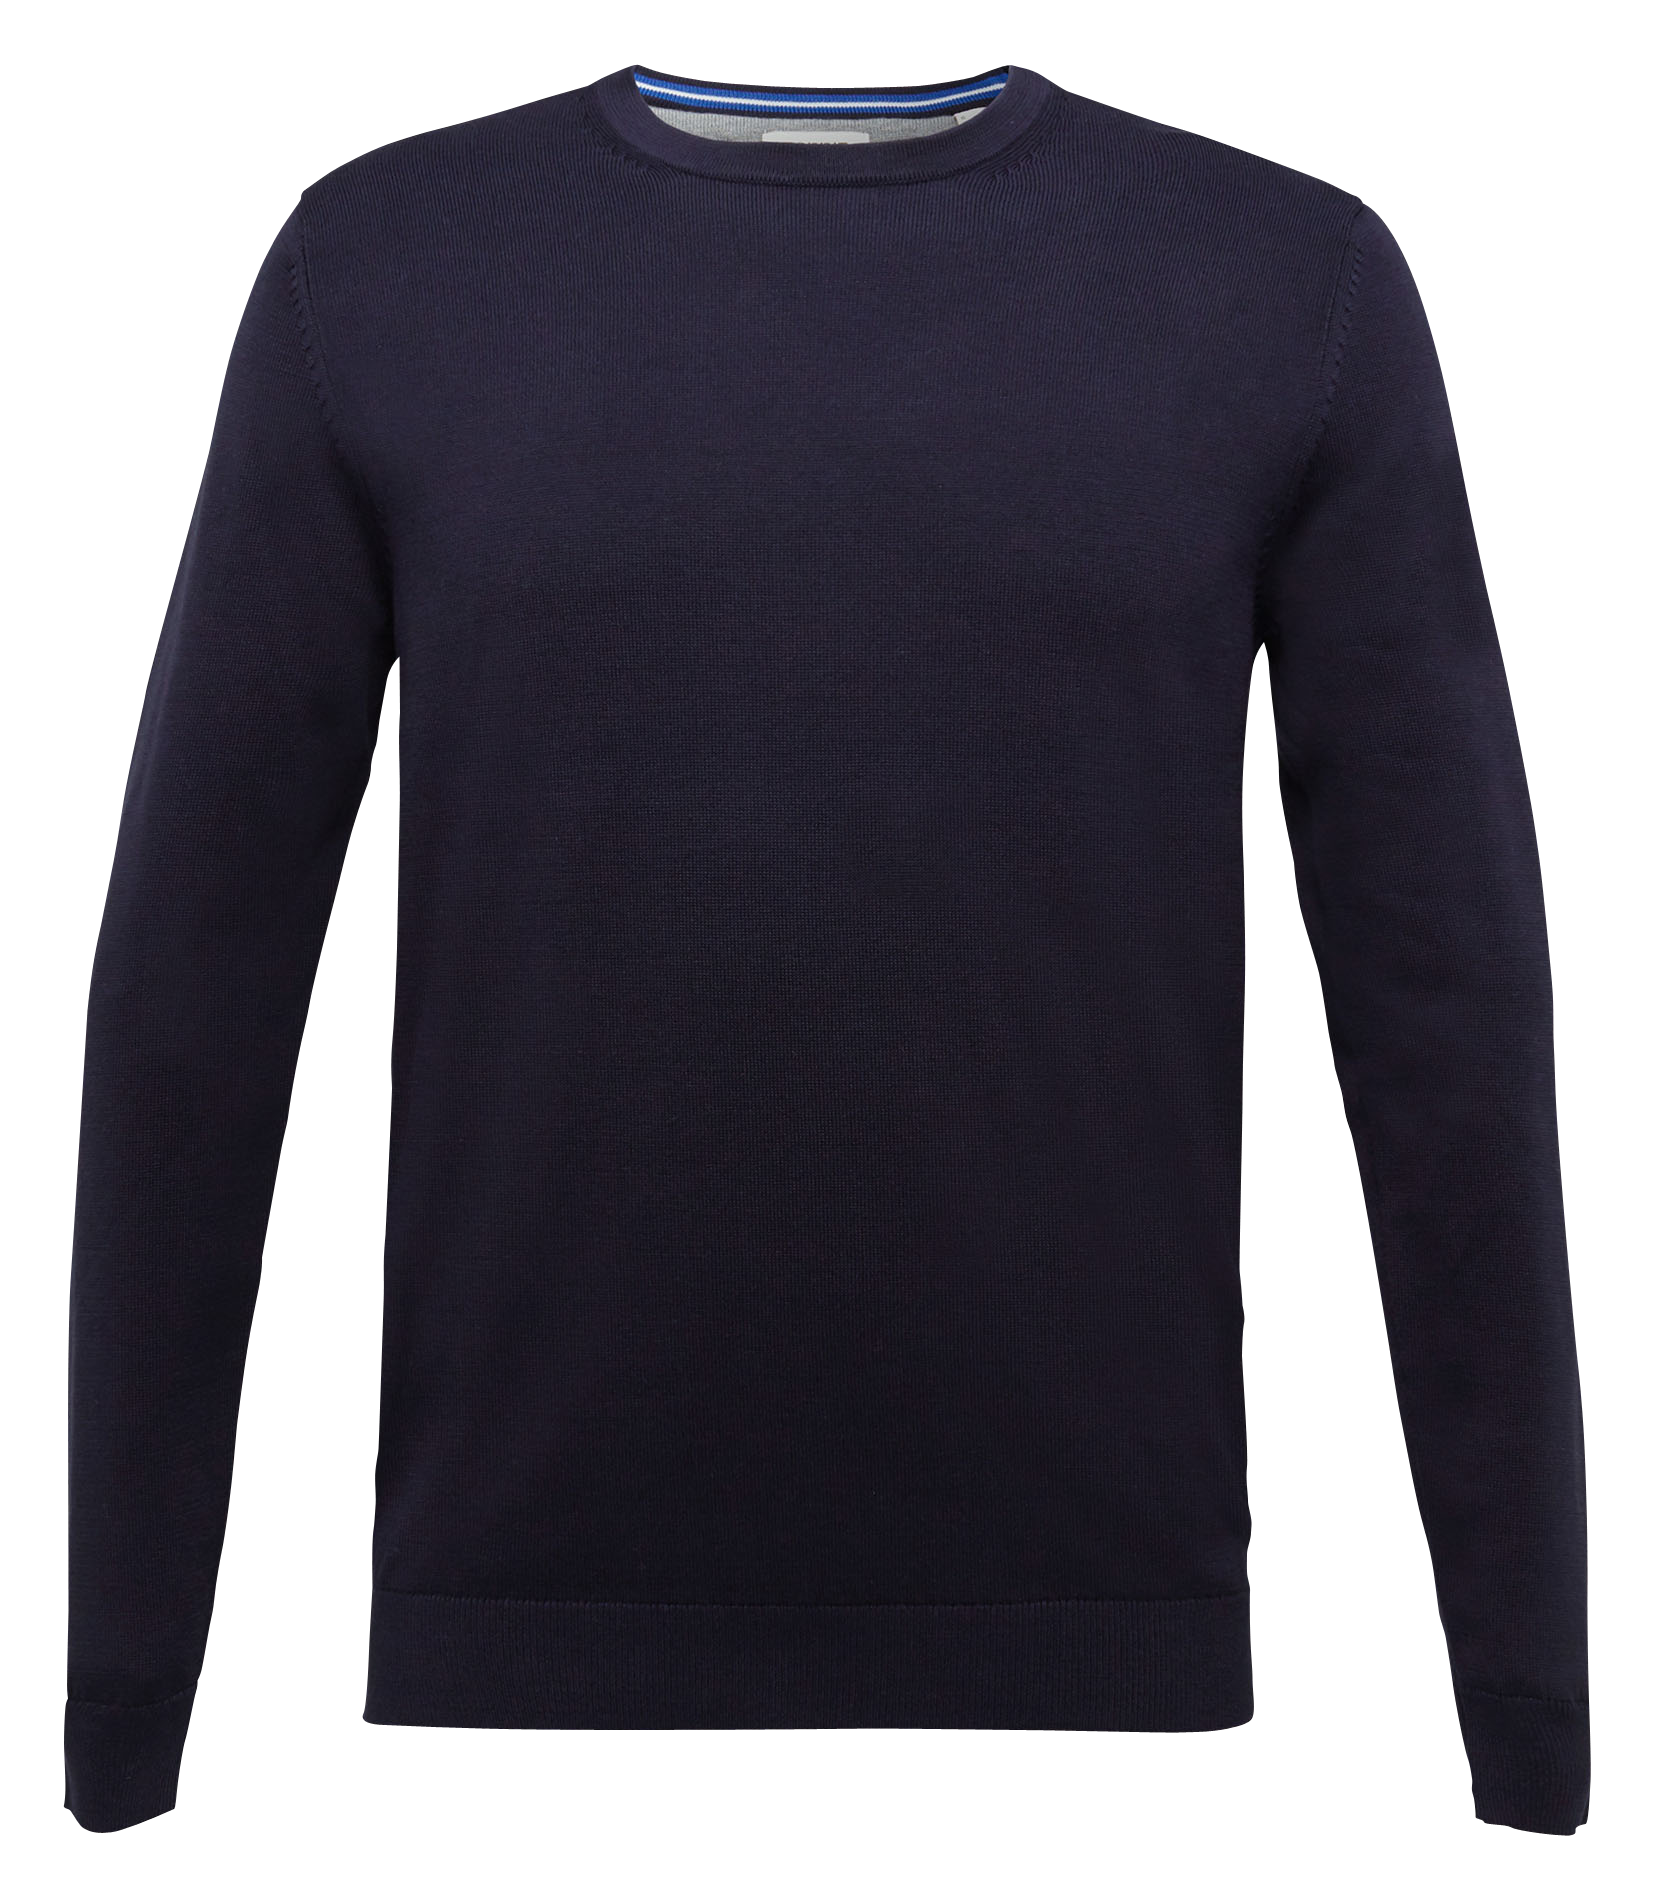 Save 62% Esprit 081ee2i316 Sweater in Black for Men Mens Sweaters and knitwear Esprit Sweaters and knitwear 